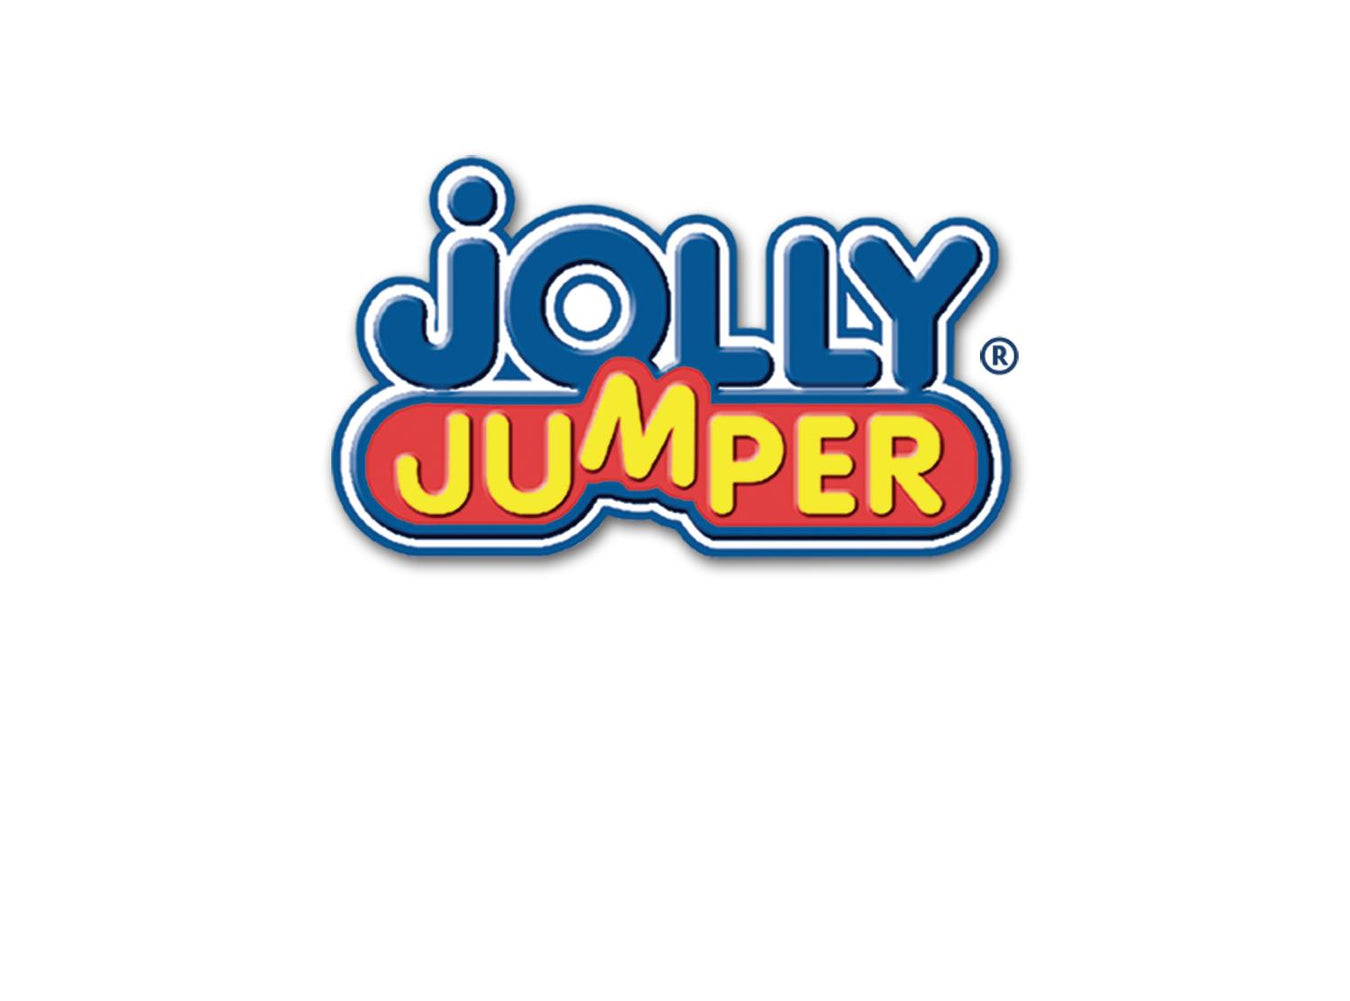 Jolly Jumper Range